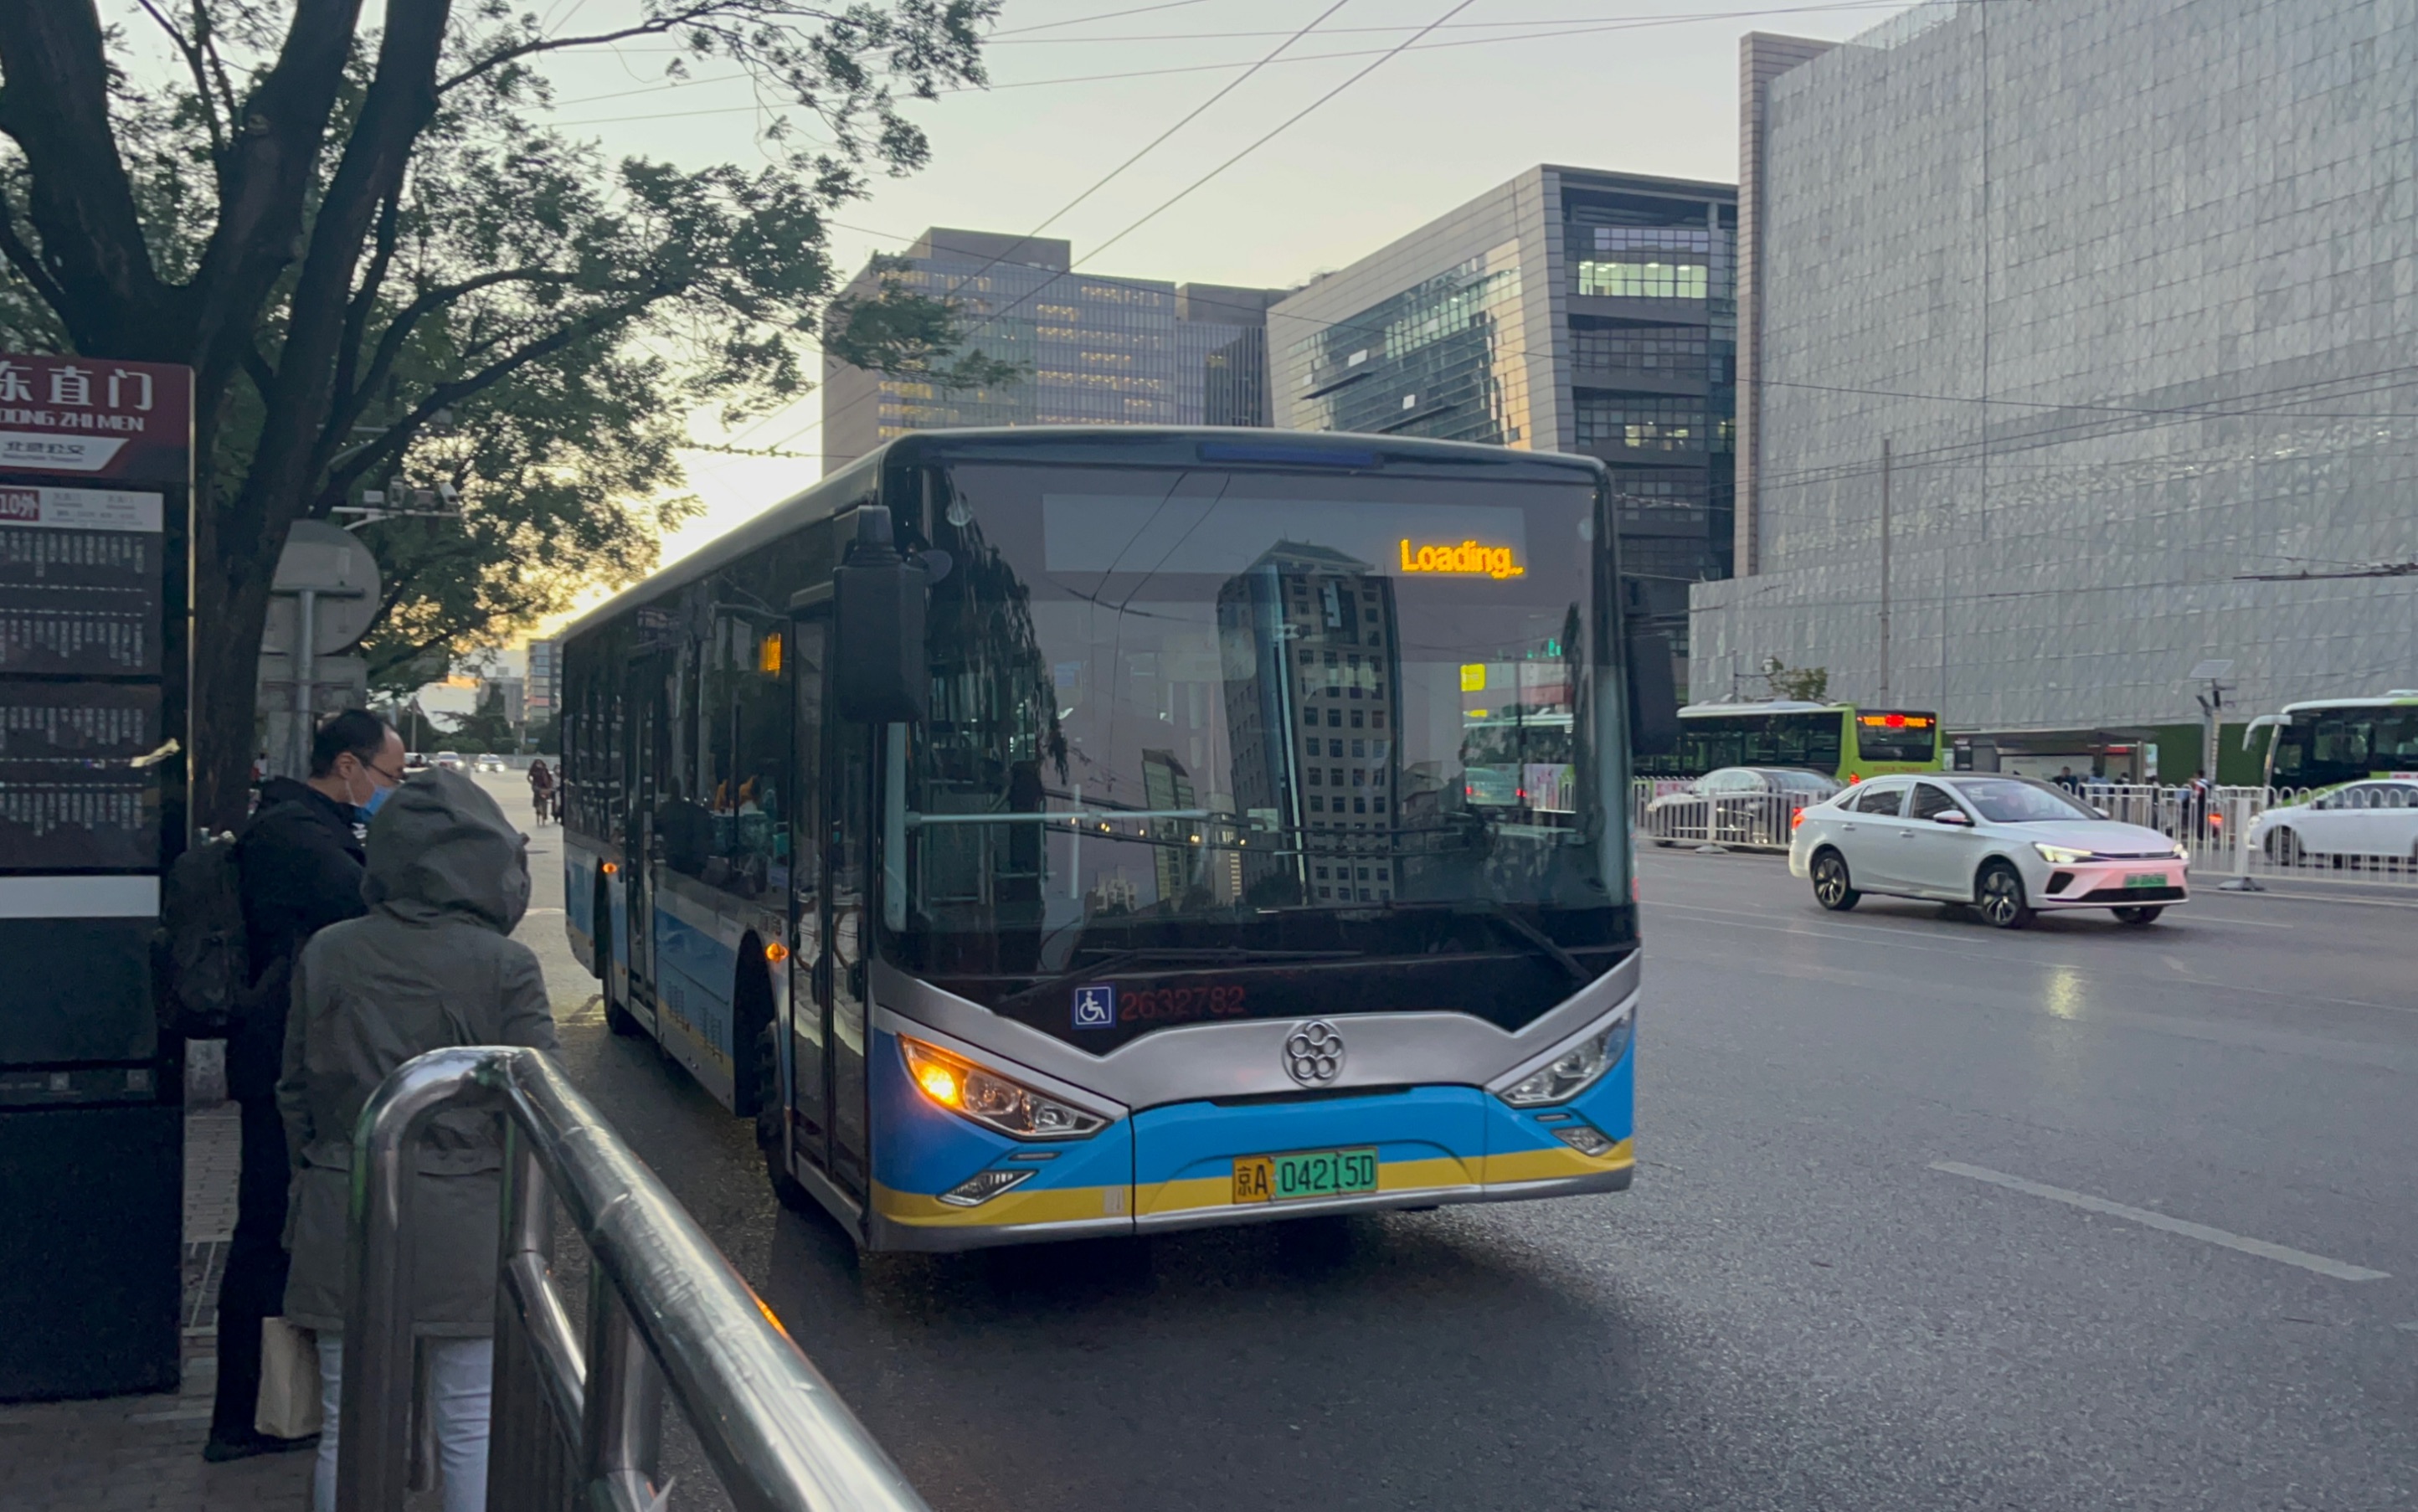 北京413路公交车路线图图片